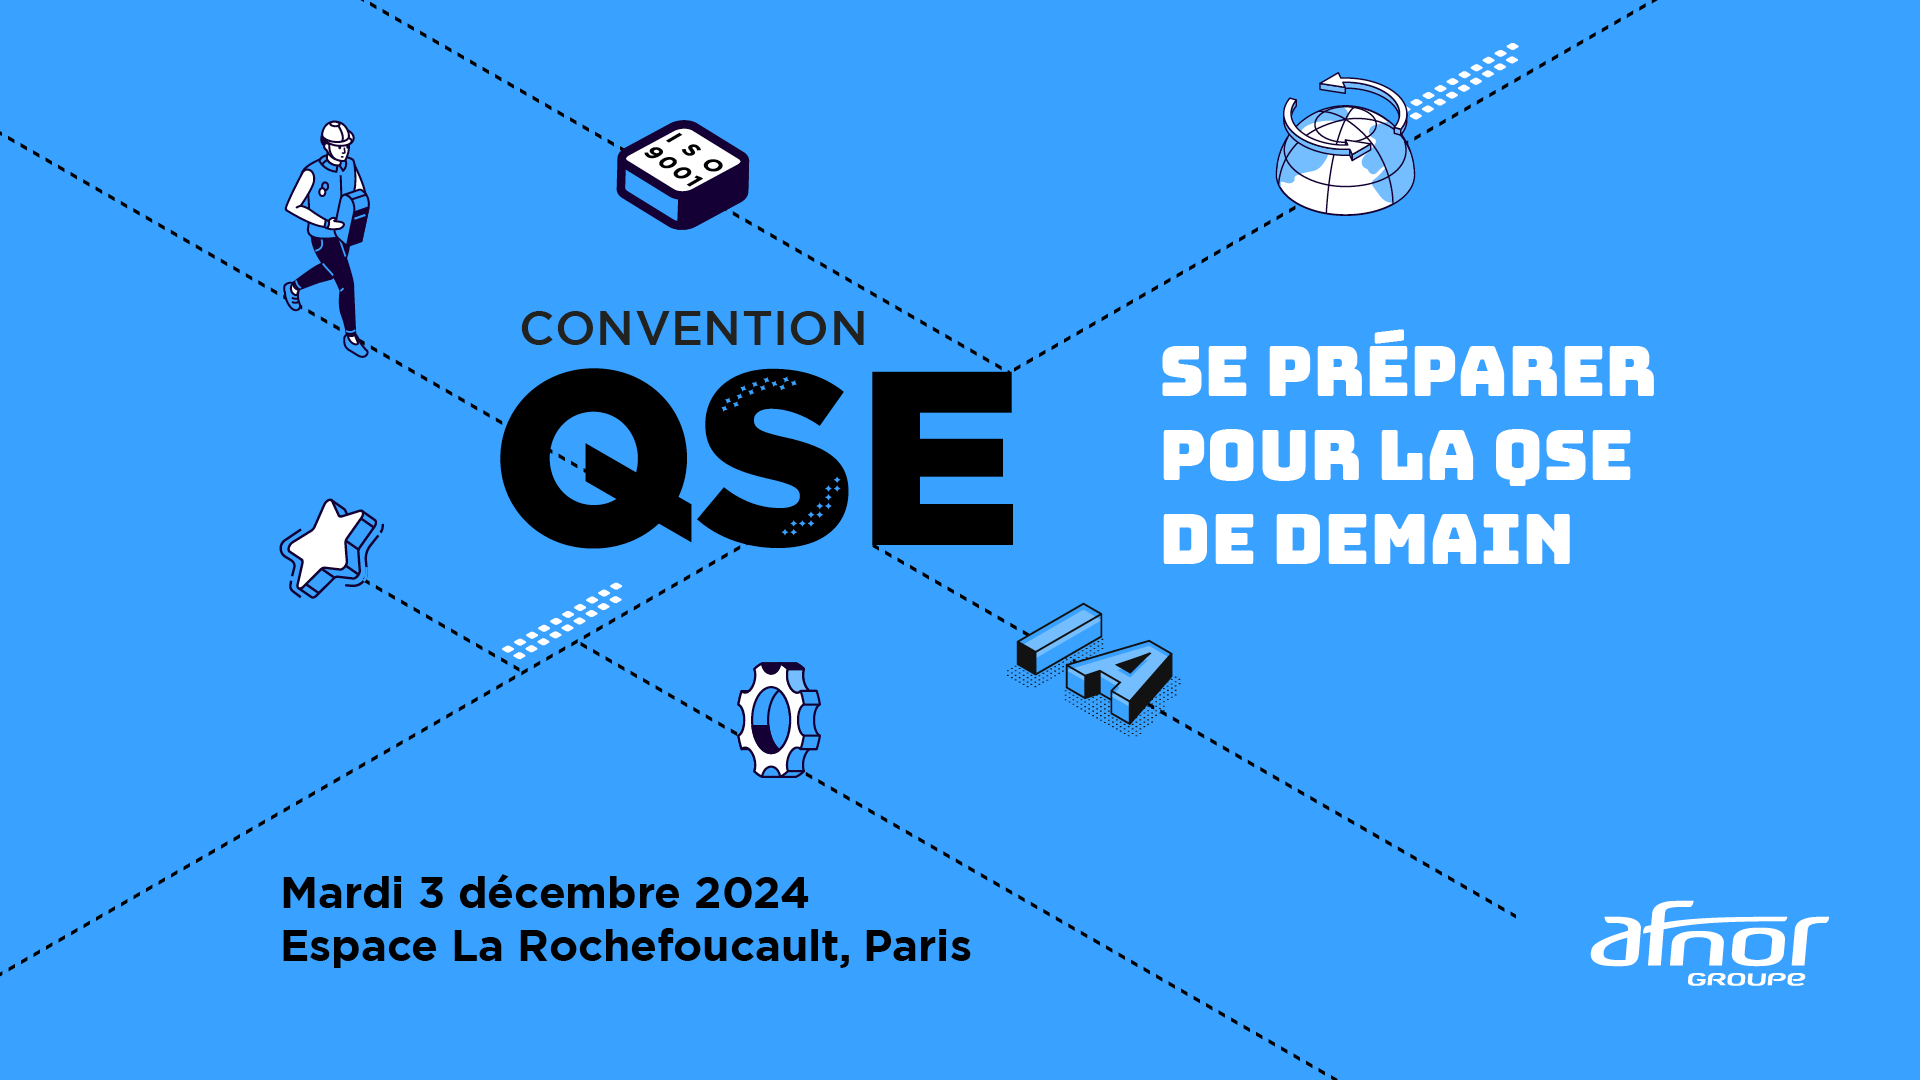 Image de présentation de la convention QSE à Paris